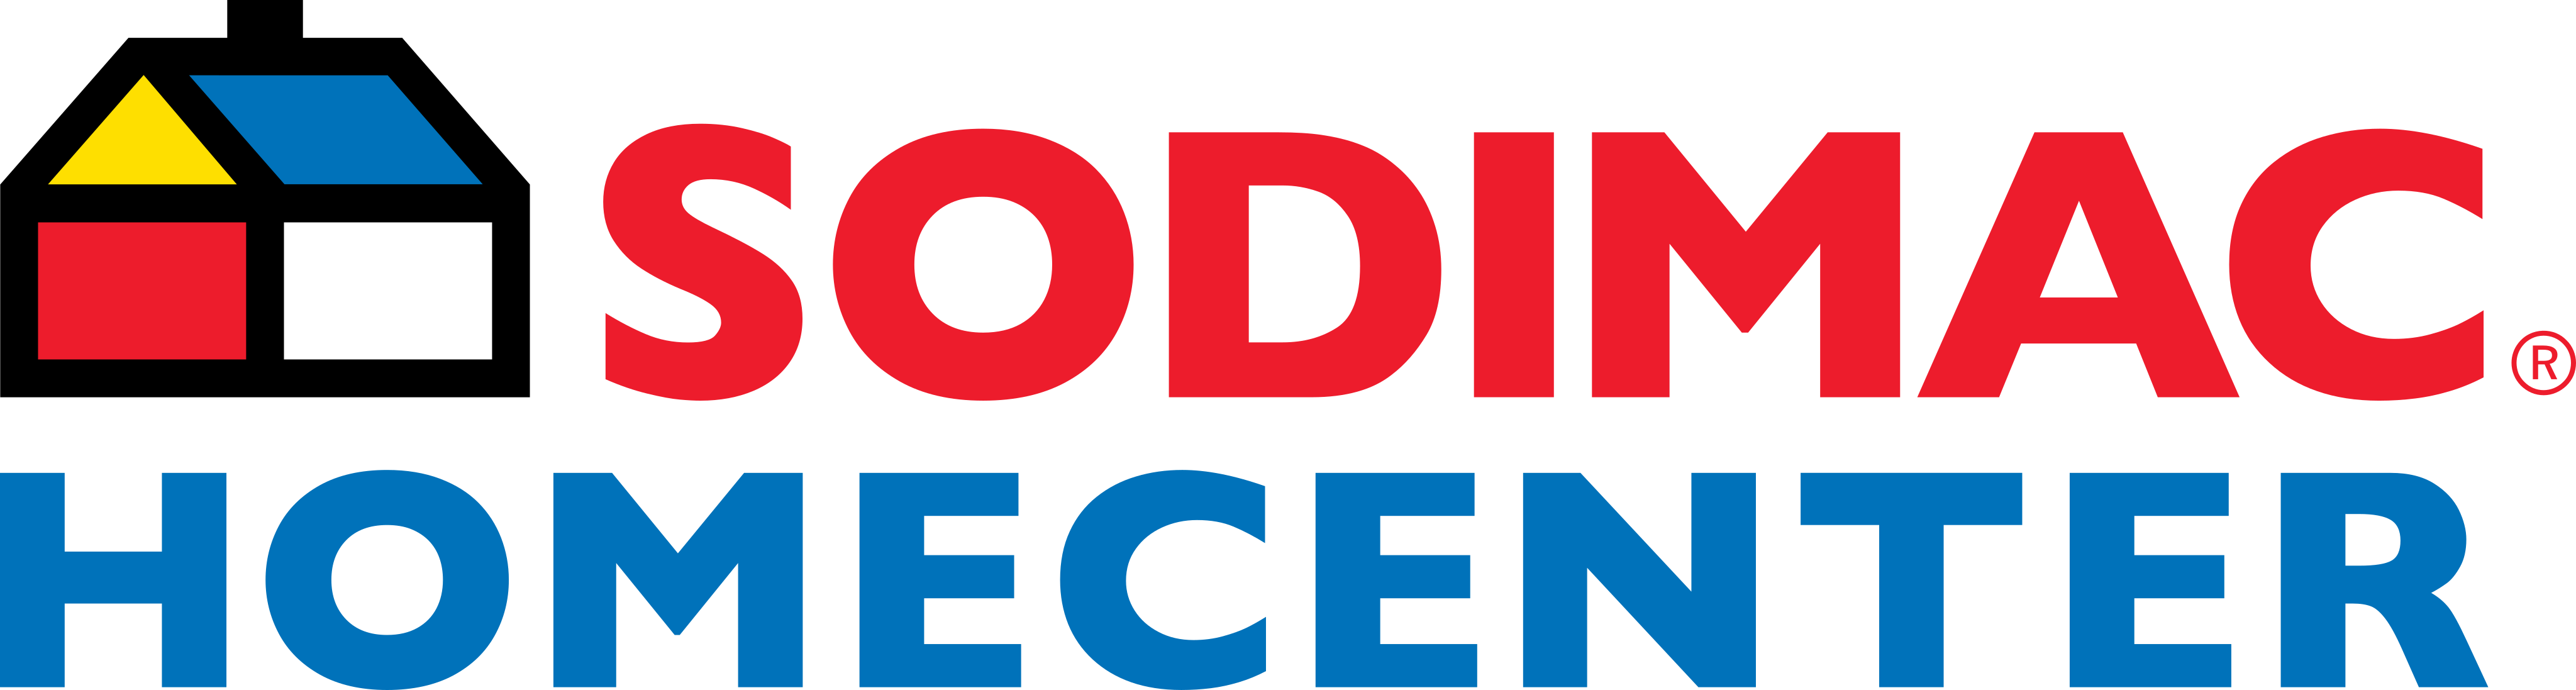 sodimac homecenter logo - Sodimac HomeCenter Logo